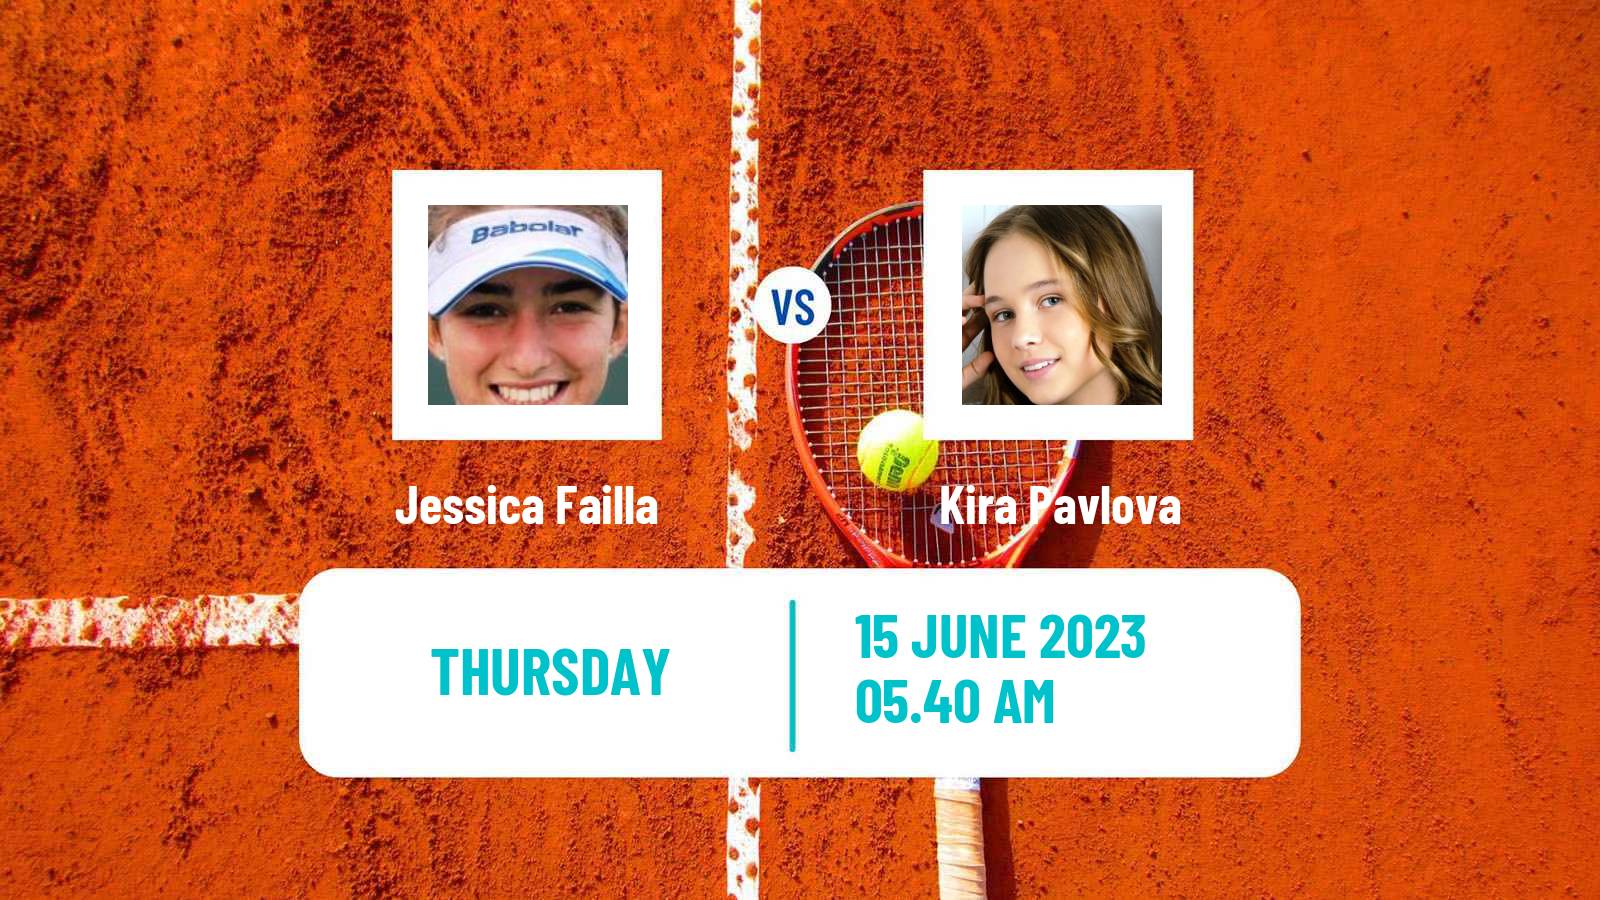 Tennis ITF W60 Madrid Women Jessica Failla - Kira Pavlova